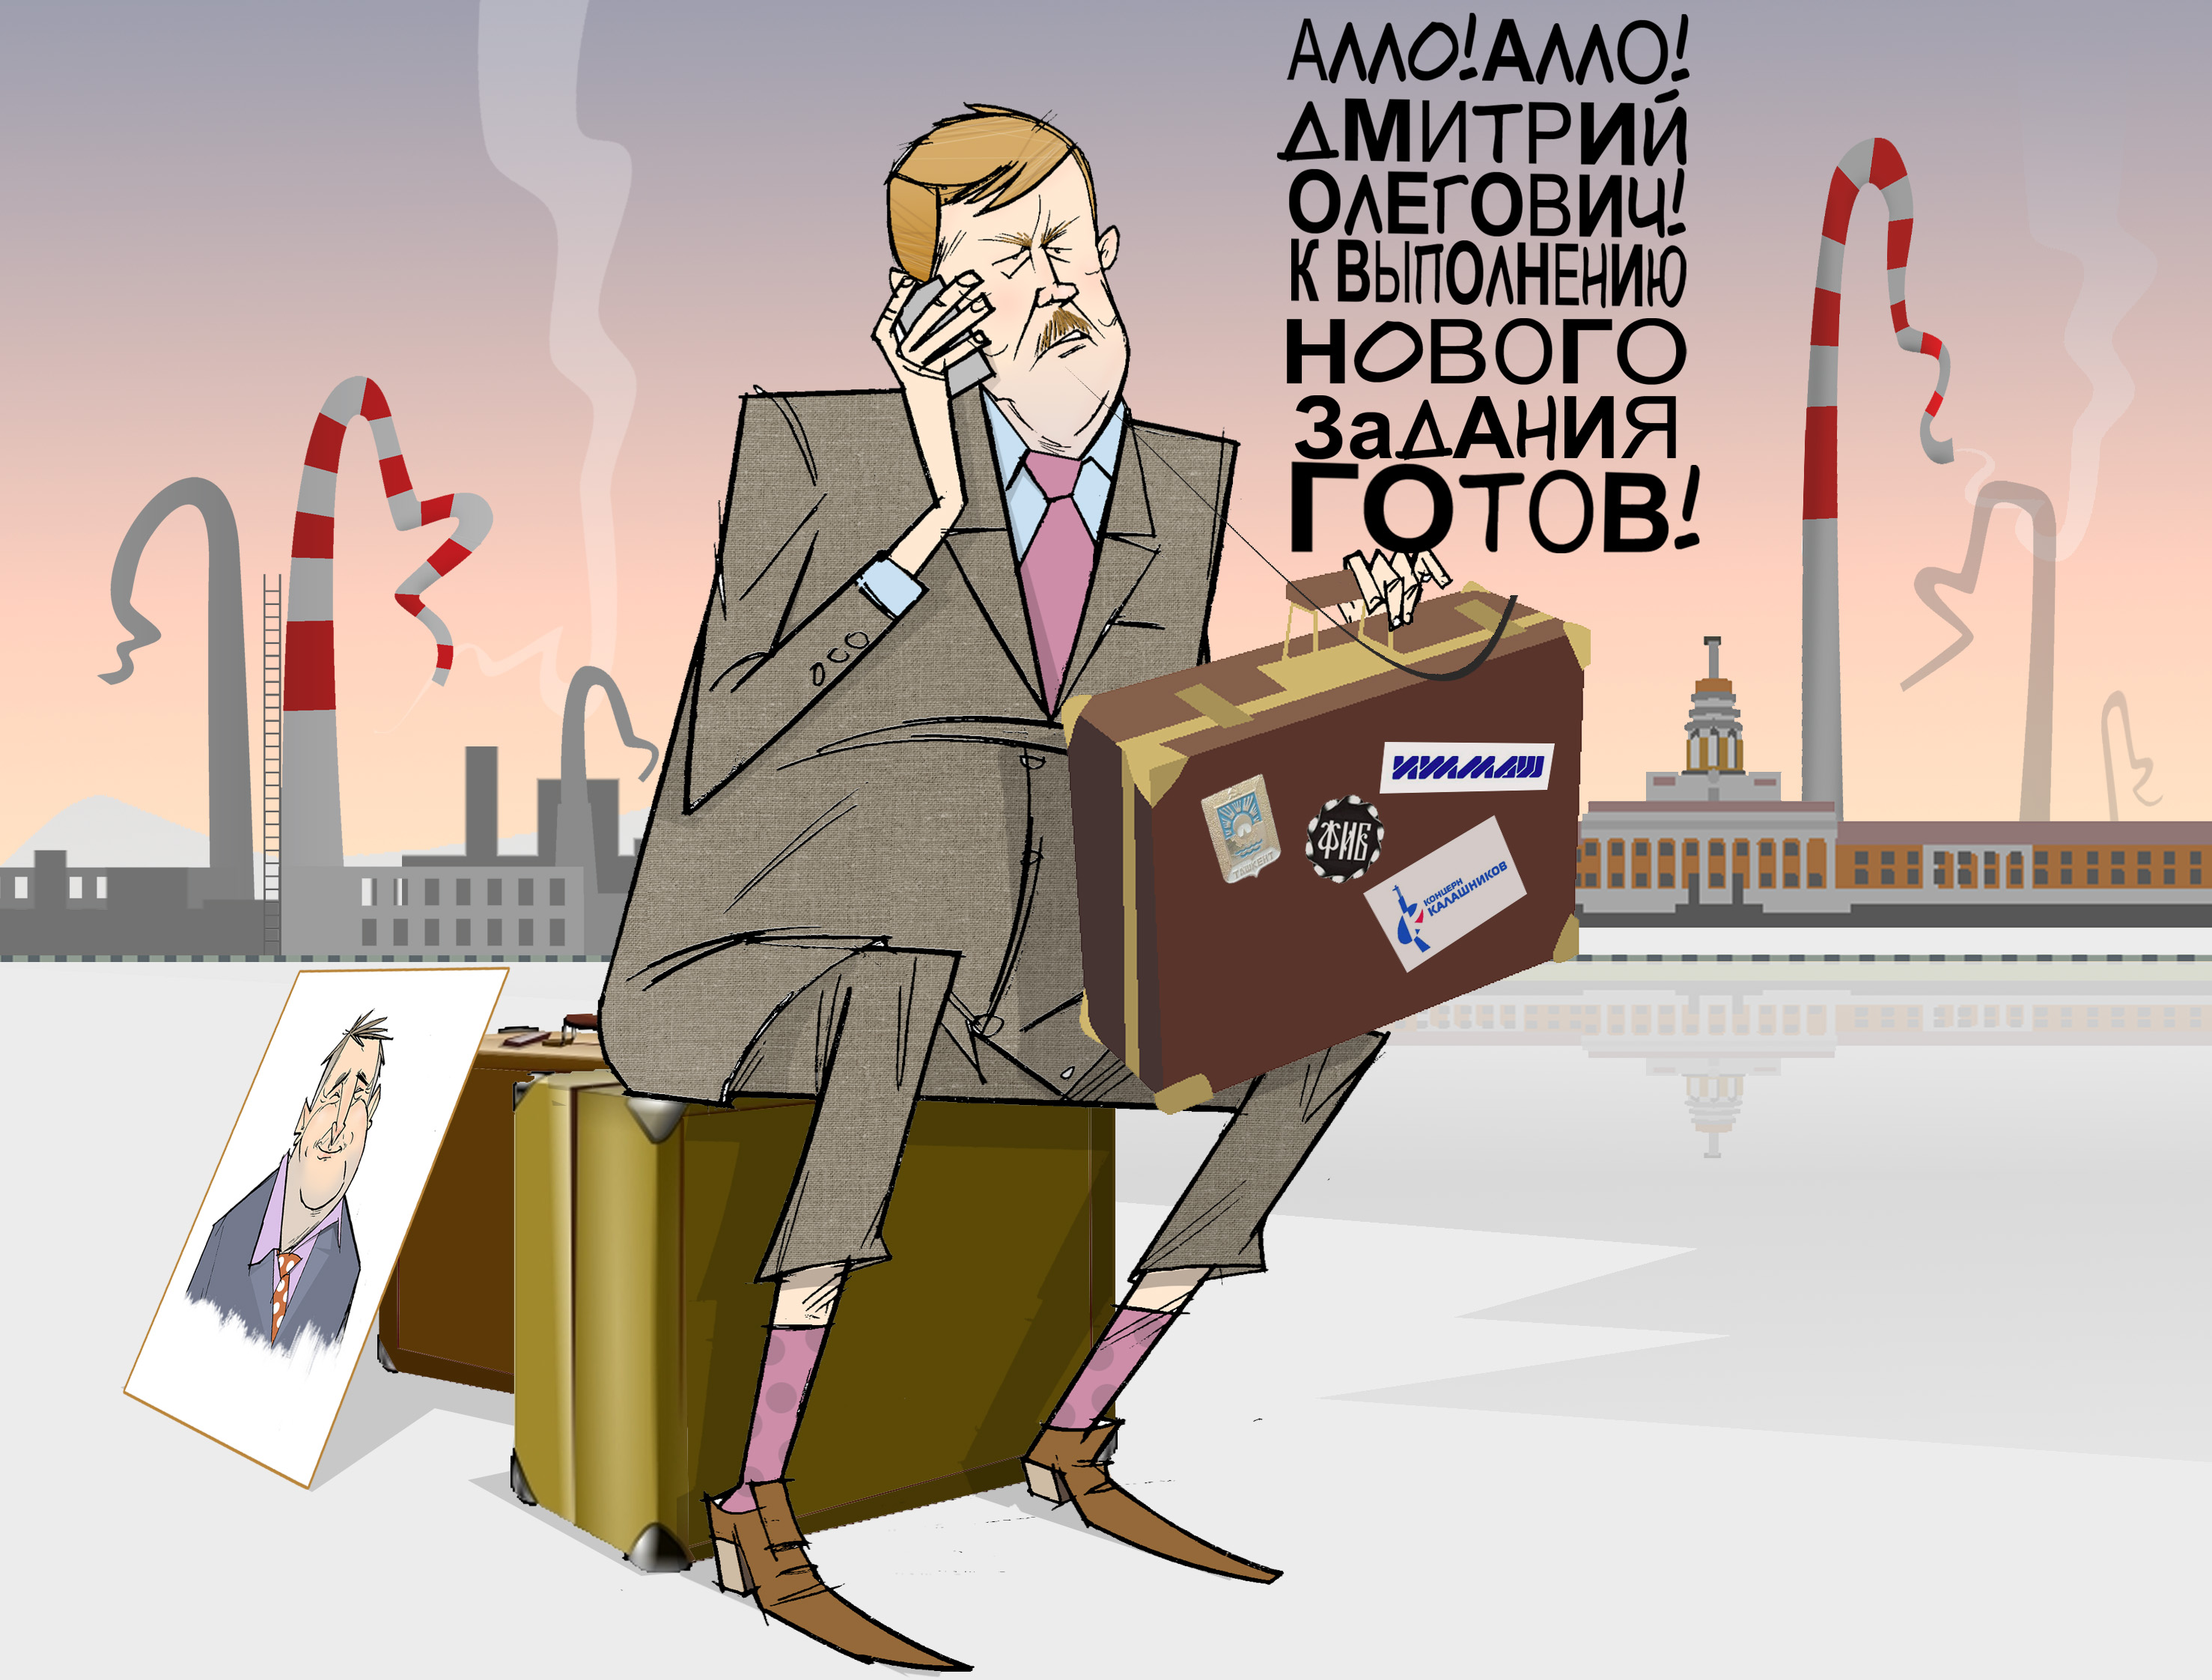 Операция "Ликвидация". #Ижмаш #КонцернКалашников #Бусыгин #Рогозин © Газета "День" 2014